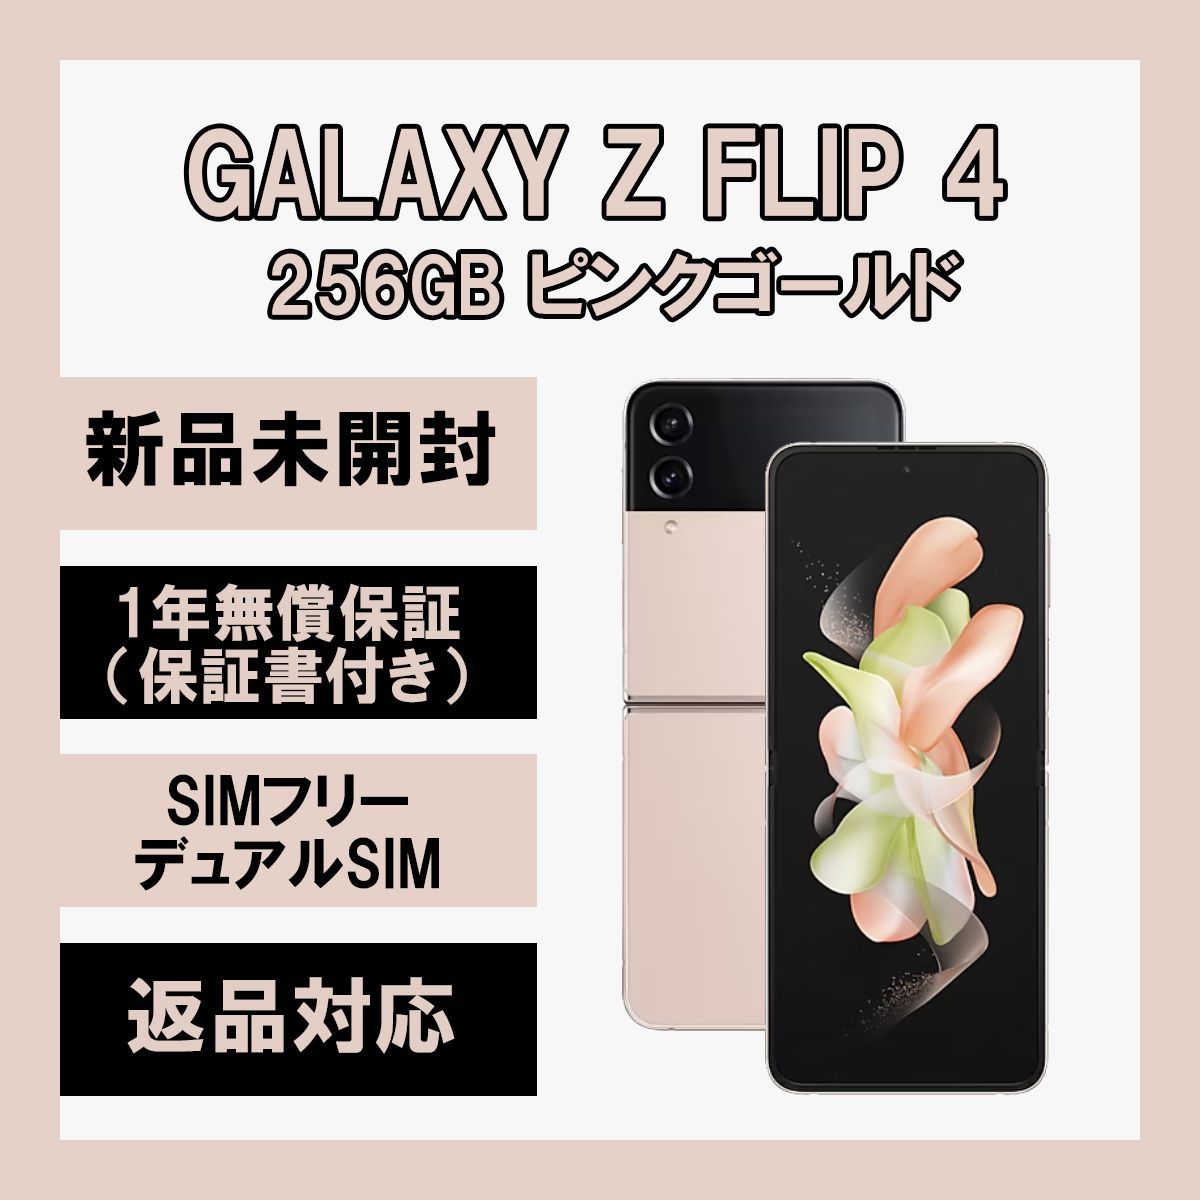 [3398] 256GB Galaxy Z Flip4 5G ピンクゴールド